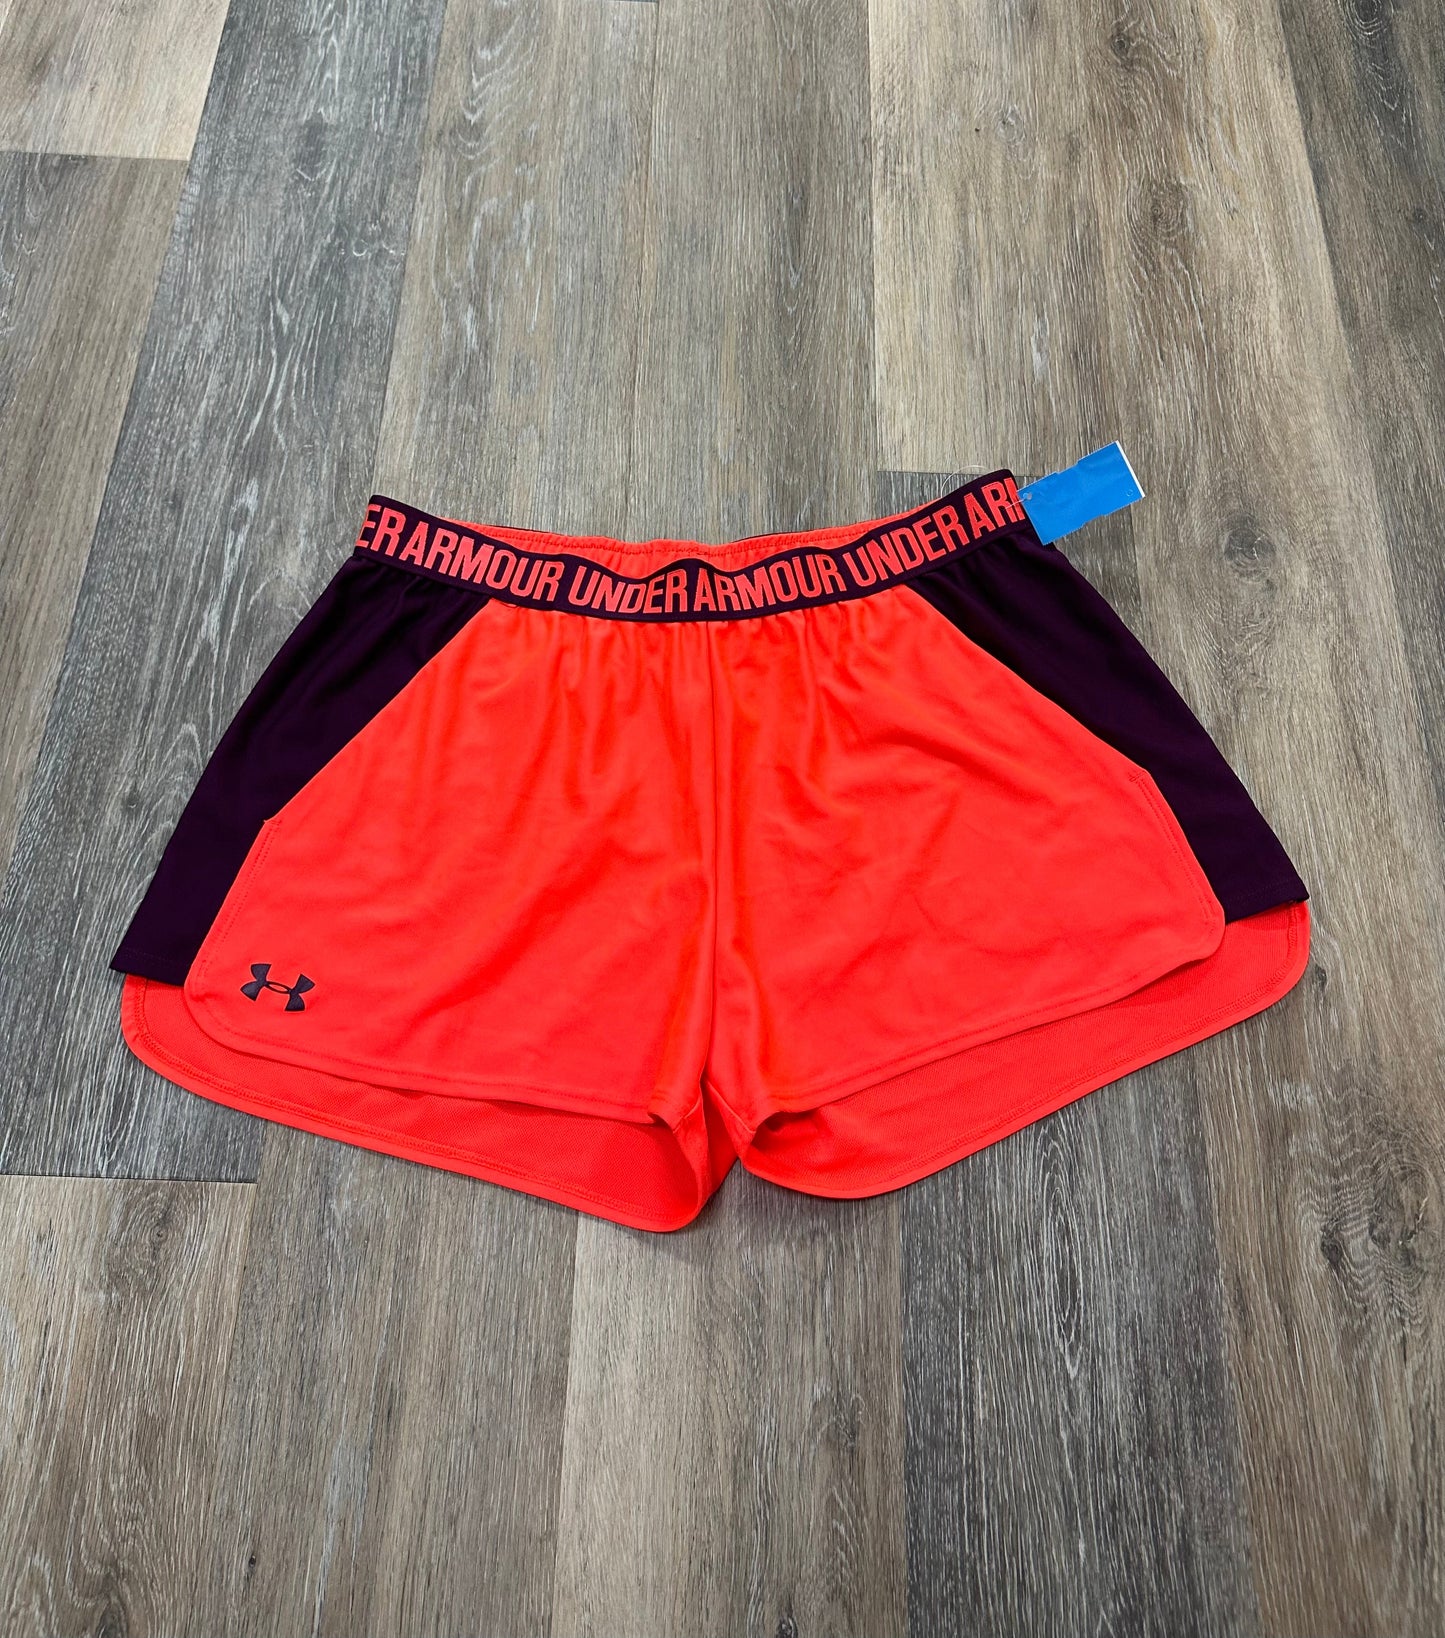 Orange Athletic Shorts Under Armour, Size Xl